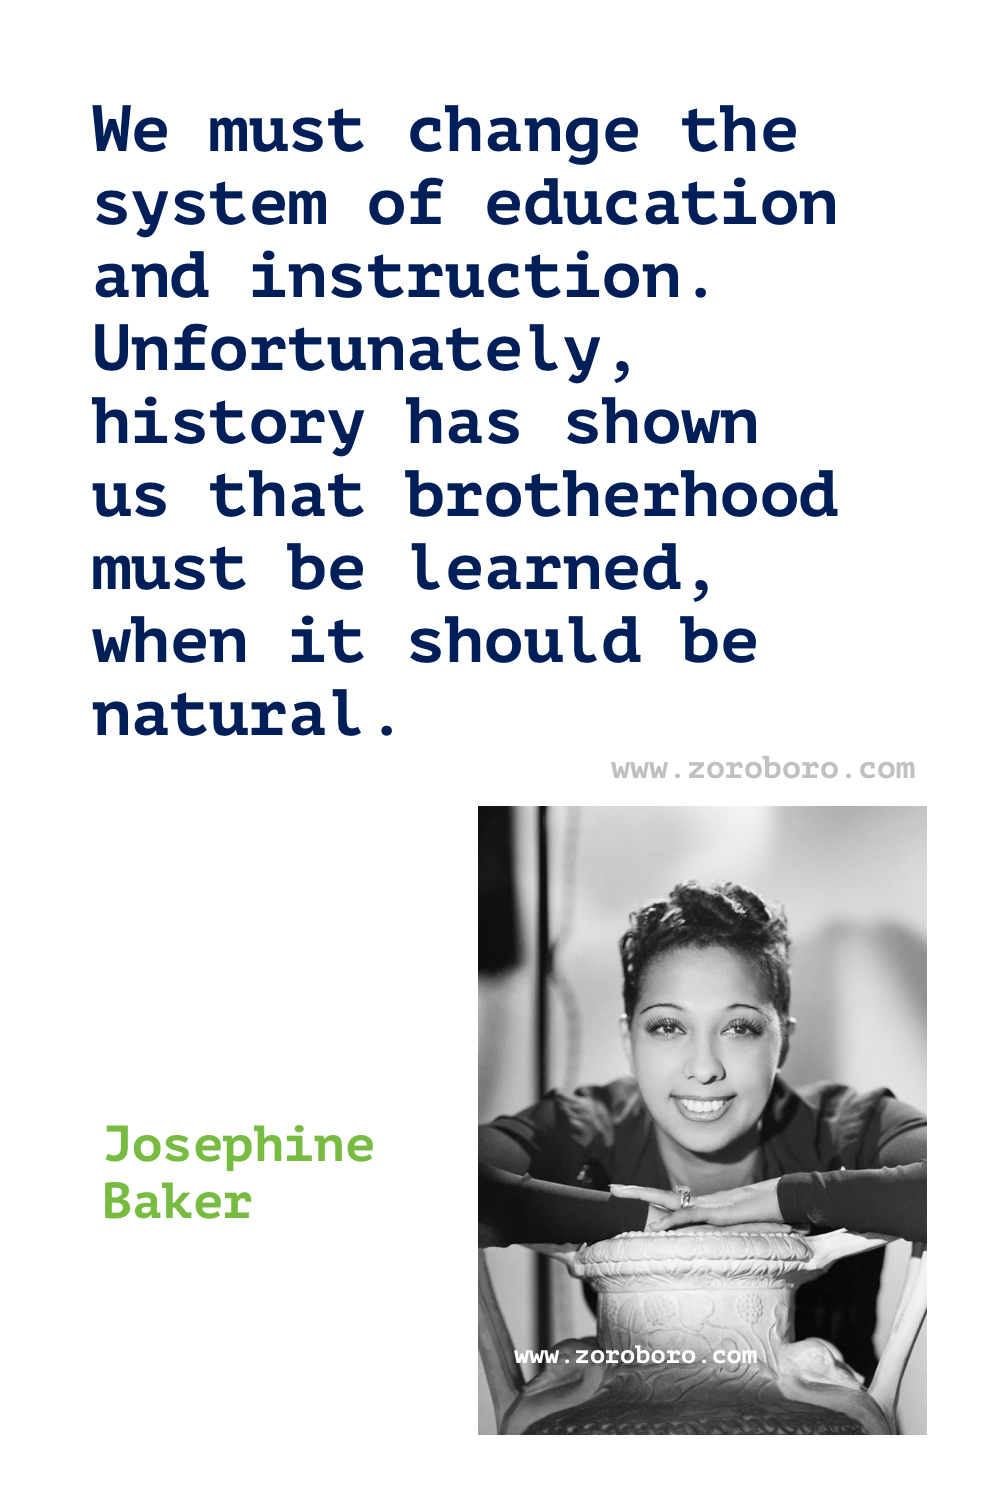 Josephine Baker Quotes, Josephine Baker Dancer, Josephine Baker Dancing Quotes, Josephine Baker French dancer.